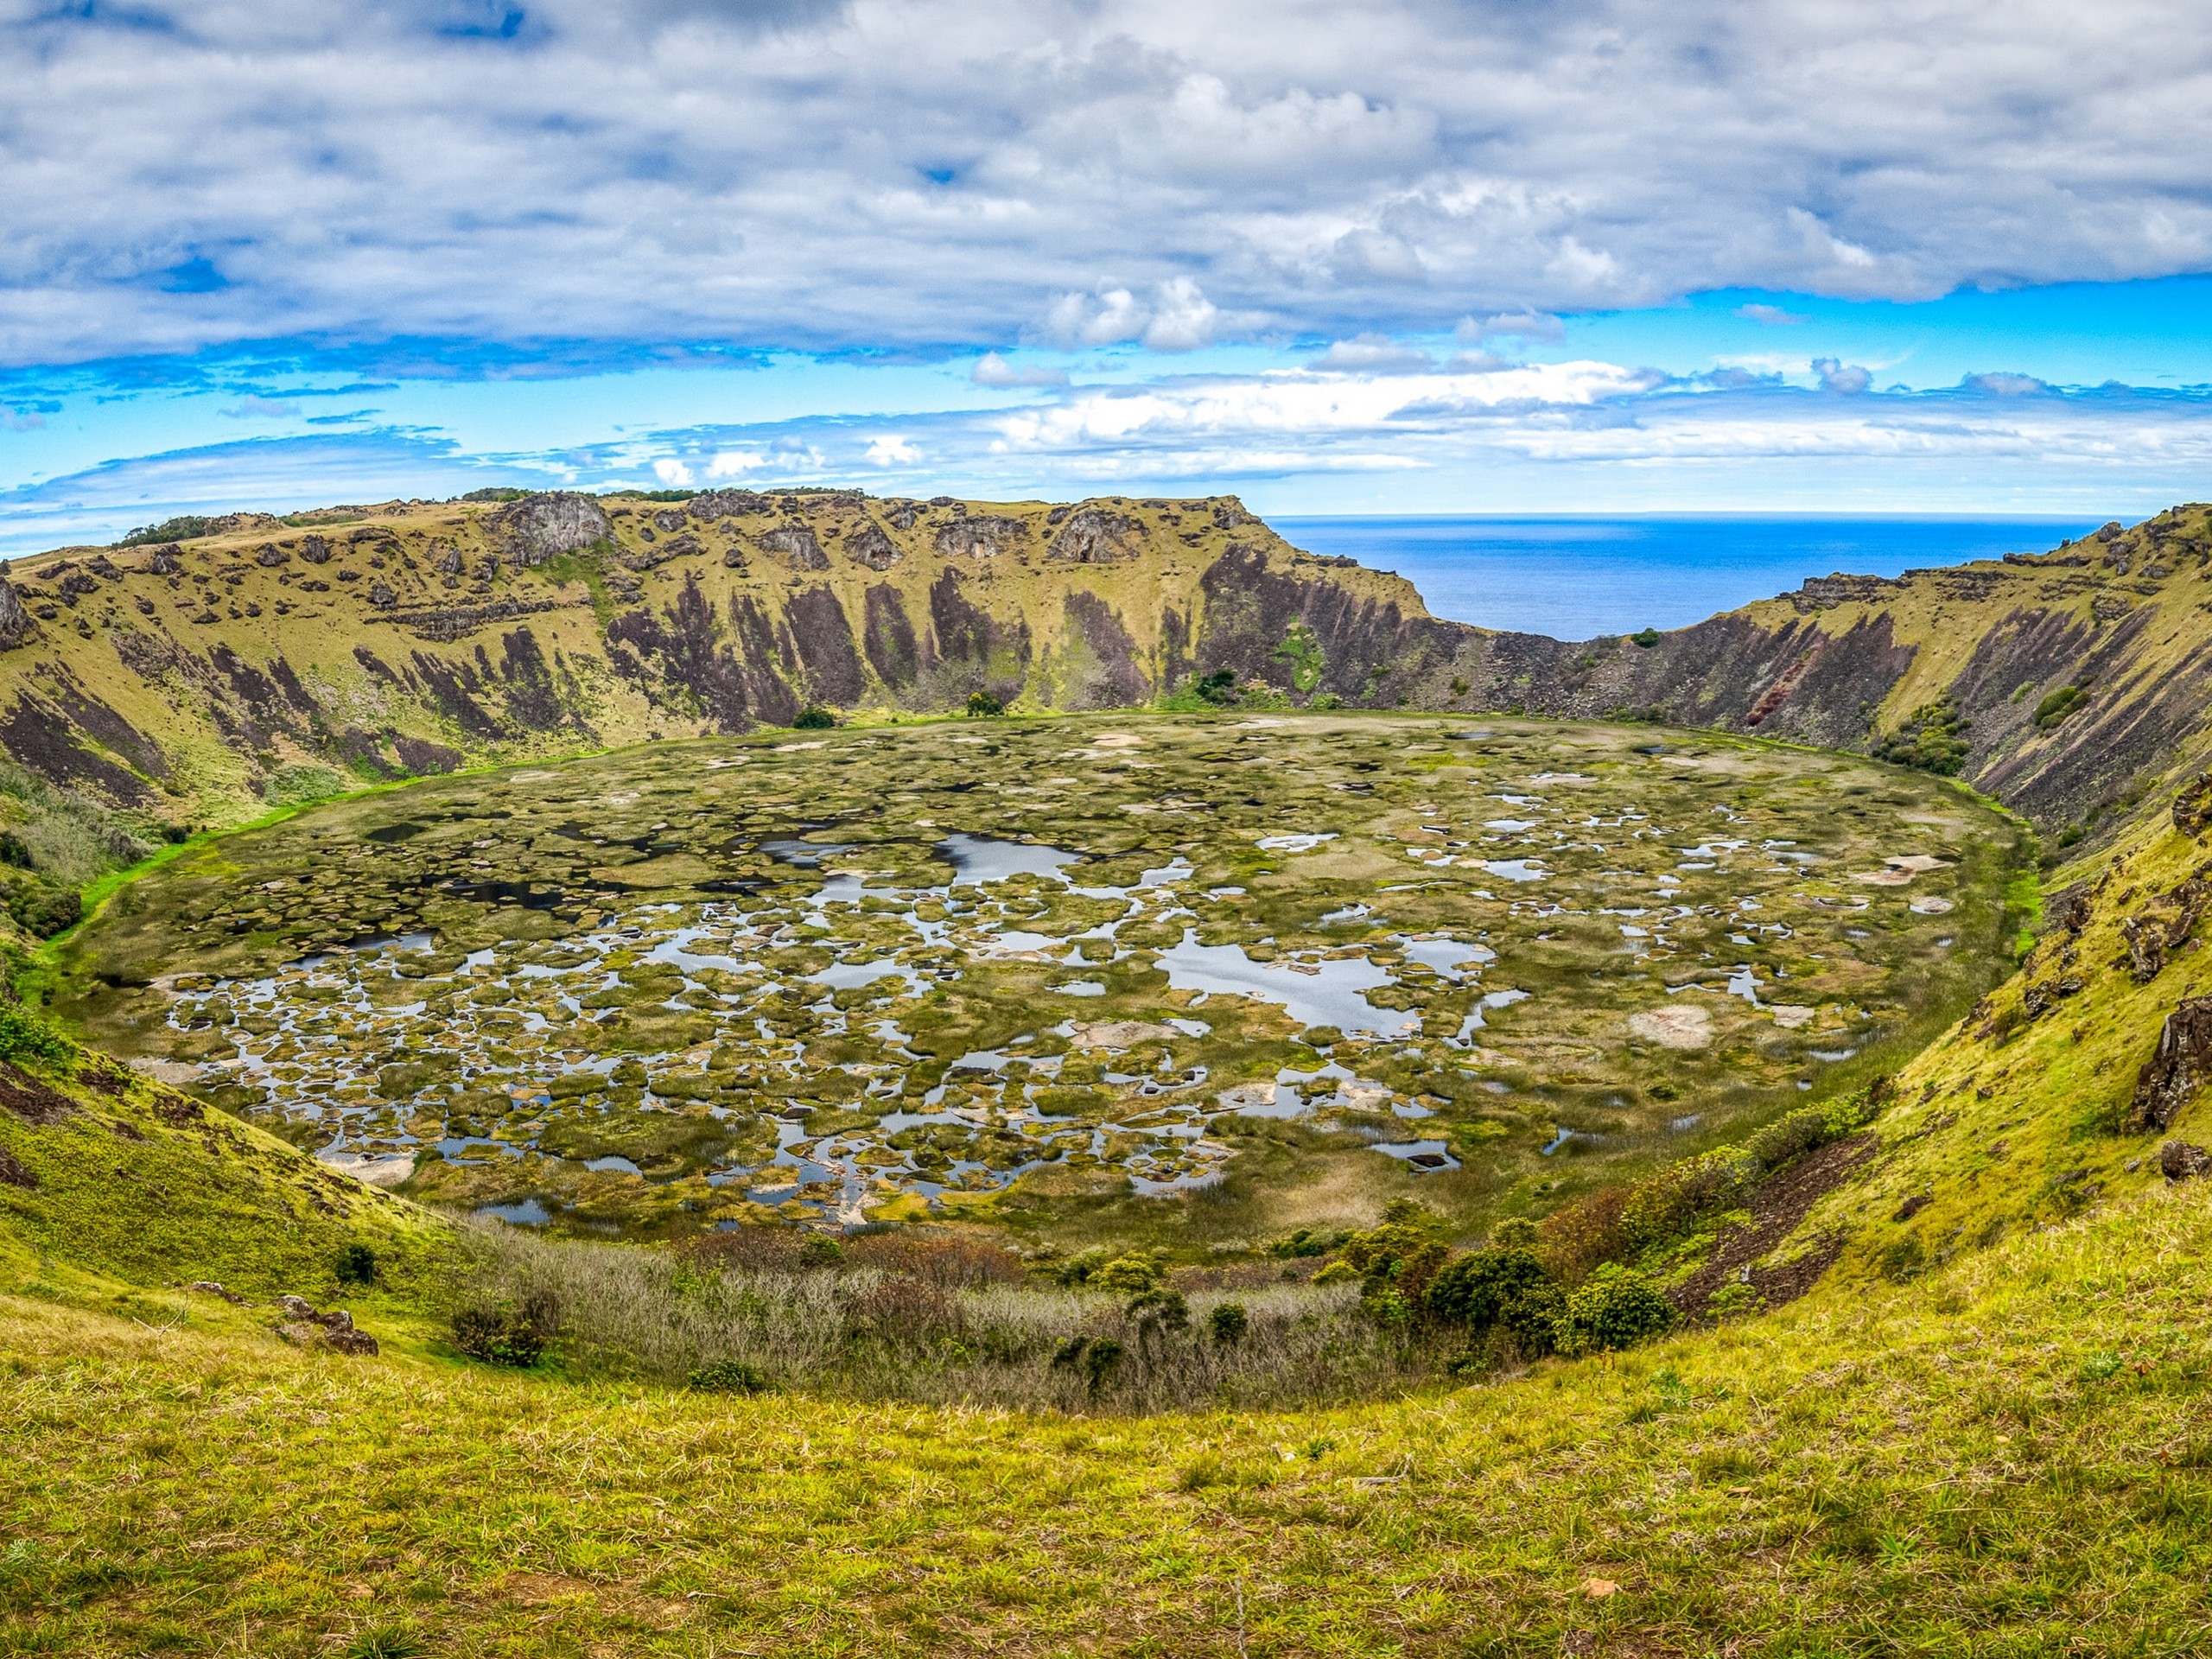 Landscape near Rapa Nui, Easter Island